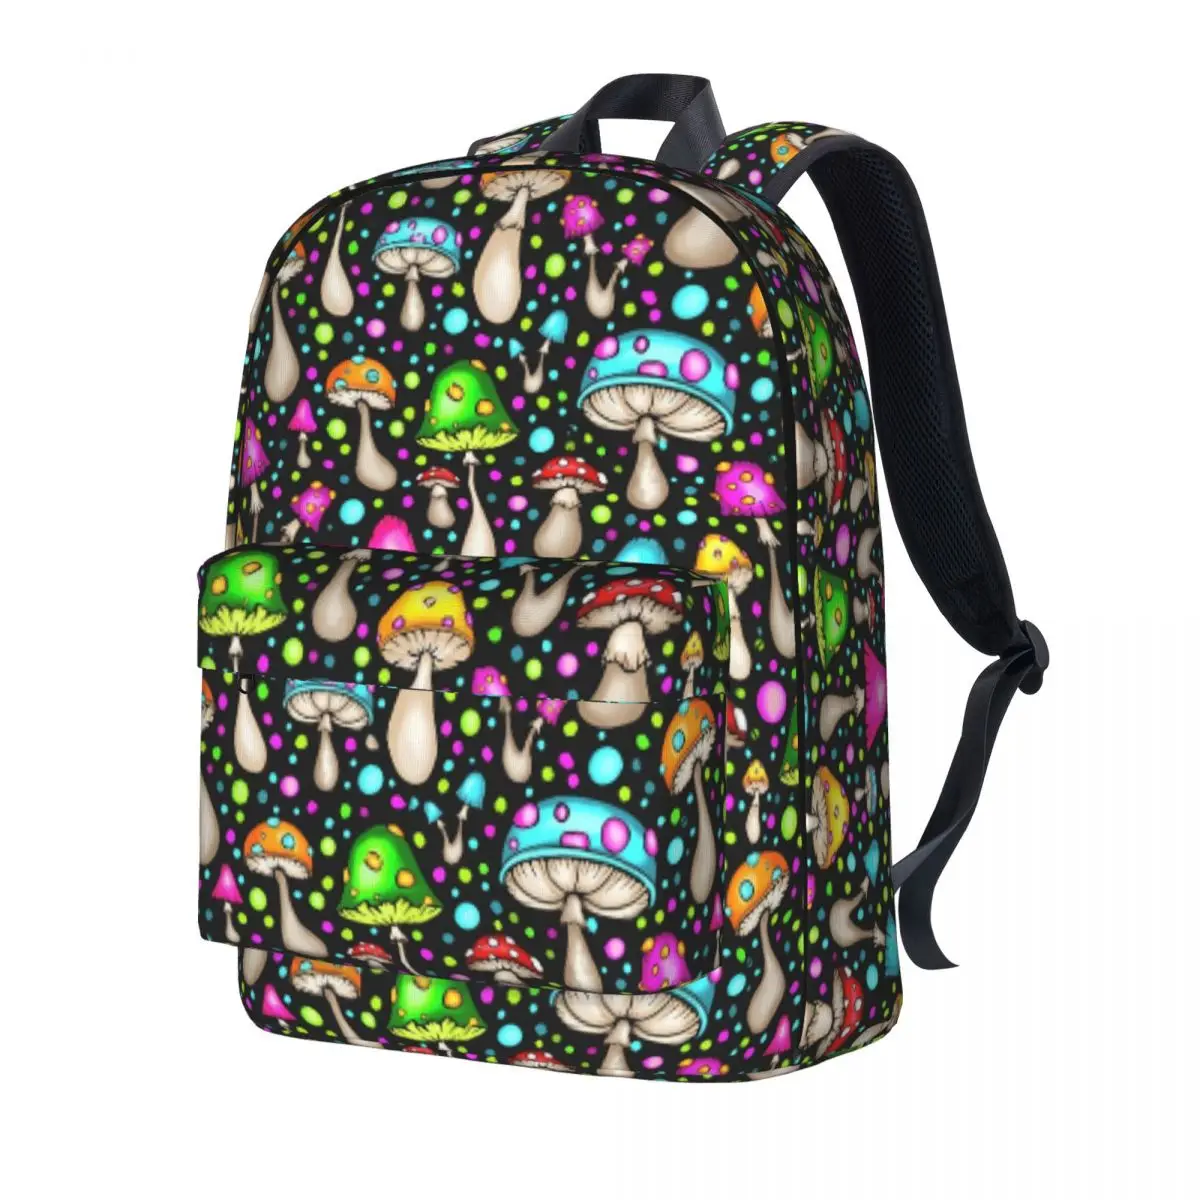 

Рюкзак с волшебными грибами, модные рюкзаки в стиле хиппи с принтом грибов для мальчиков и девочек, дизайнерские сумки для старших классов